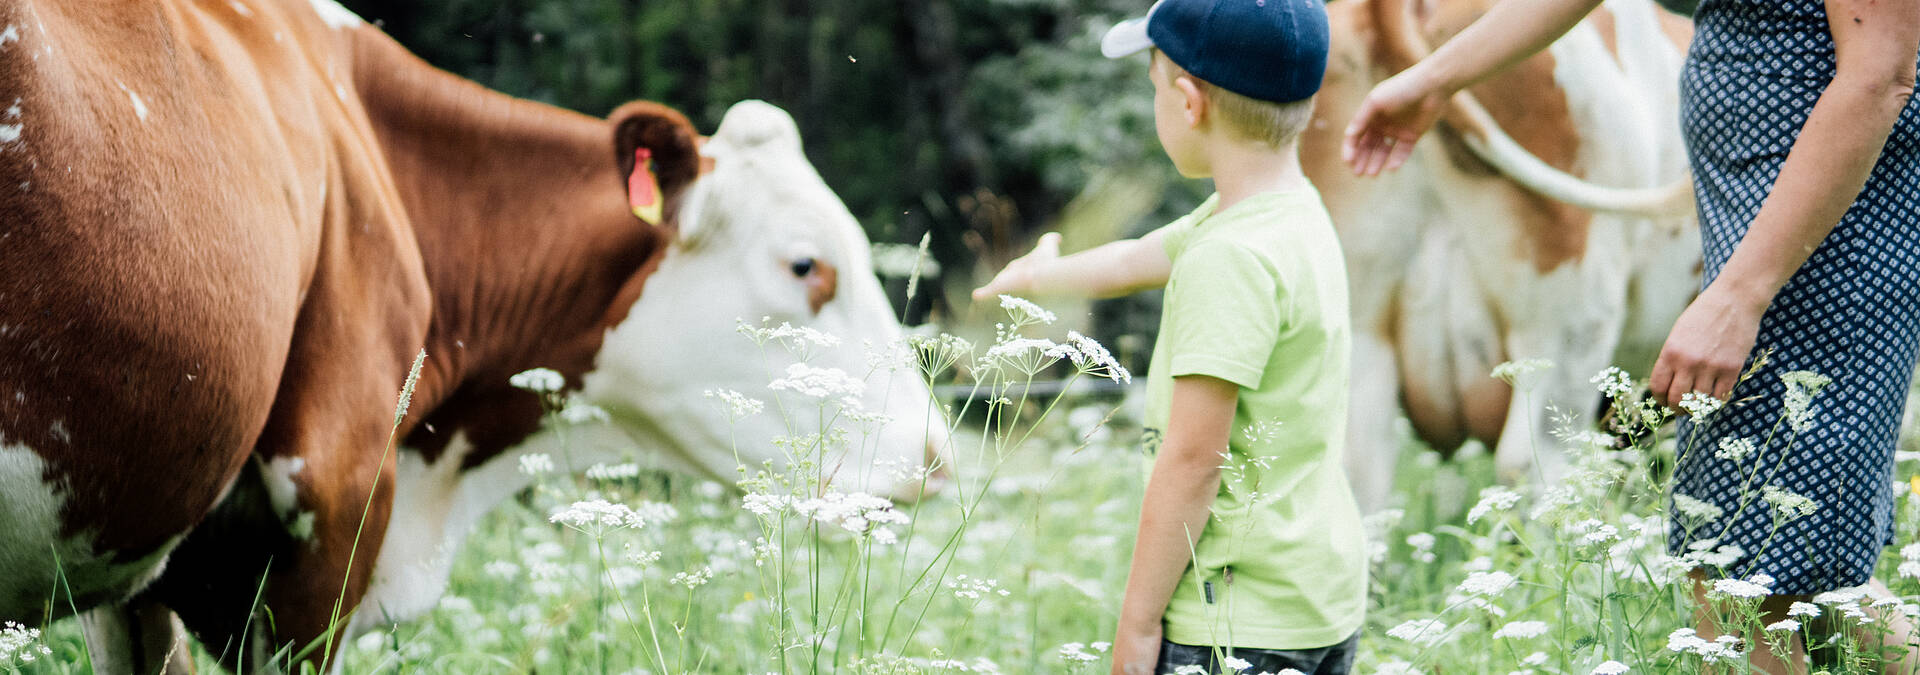 Urlaub am Bauernhof Weger Frau und Kind bei der Kuh 